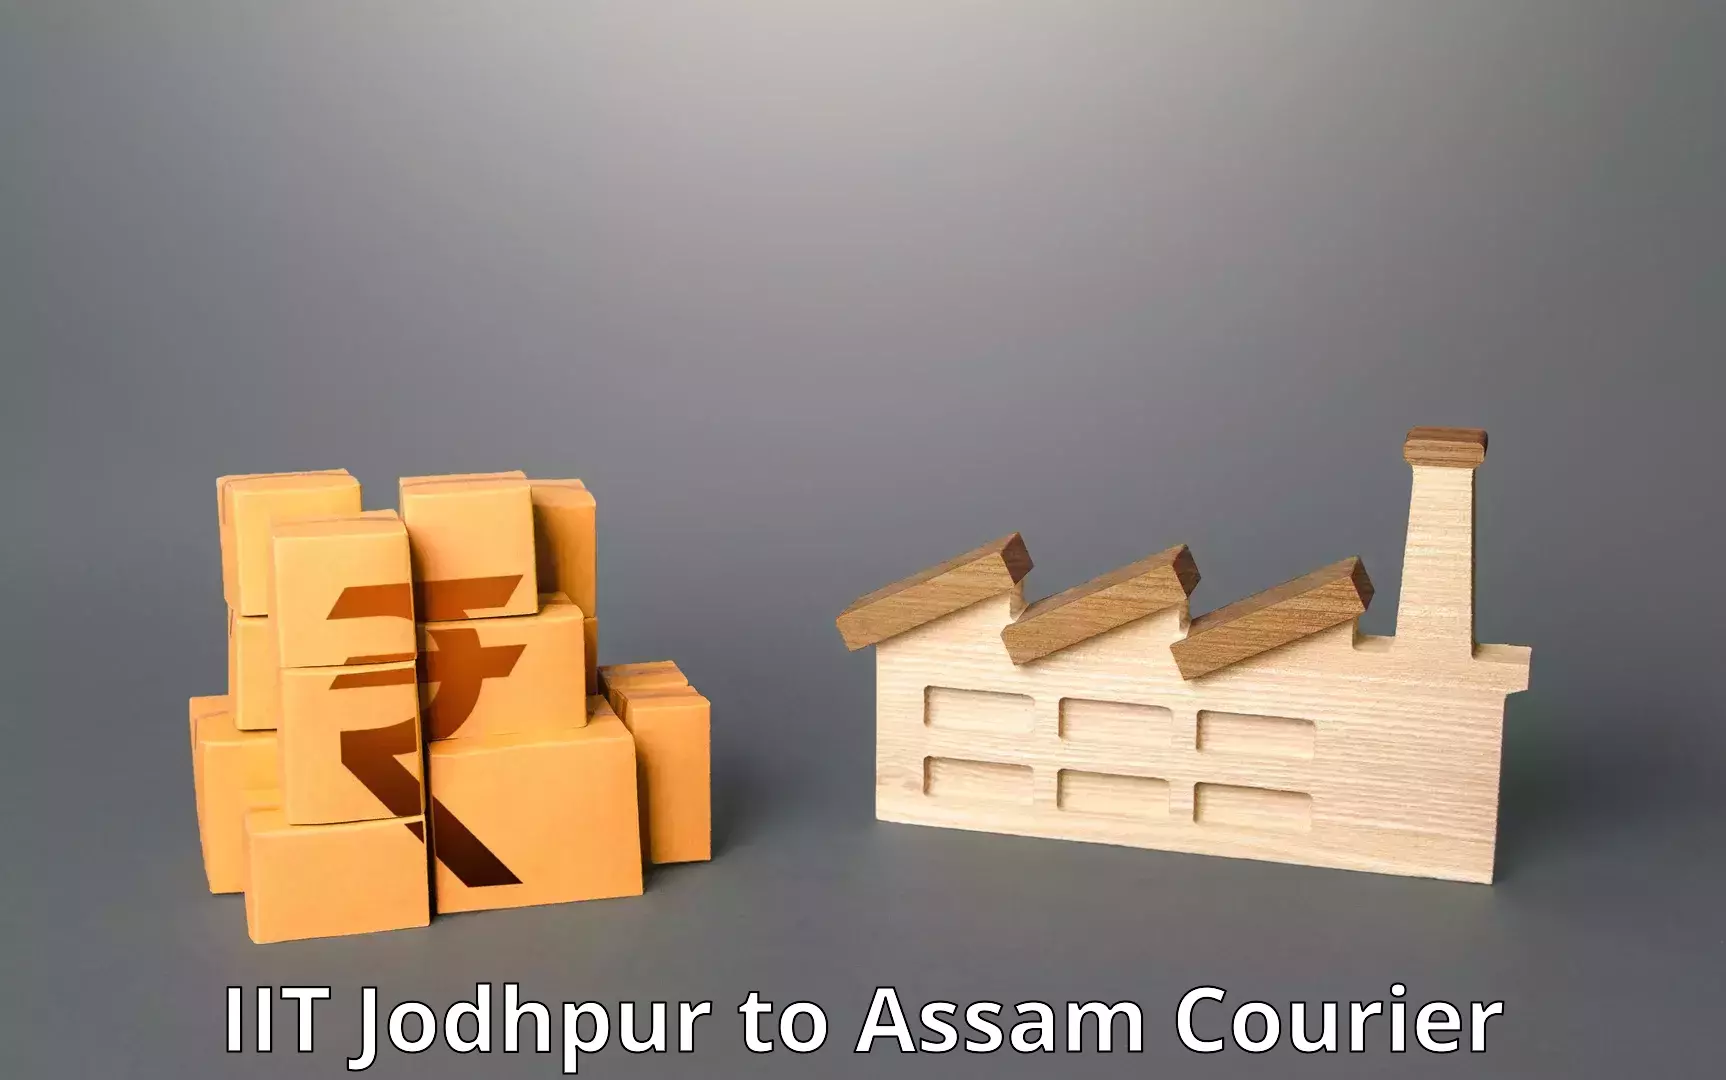 Reliable courier service in IIT Jodhpur to Jorabat